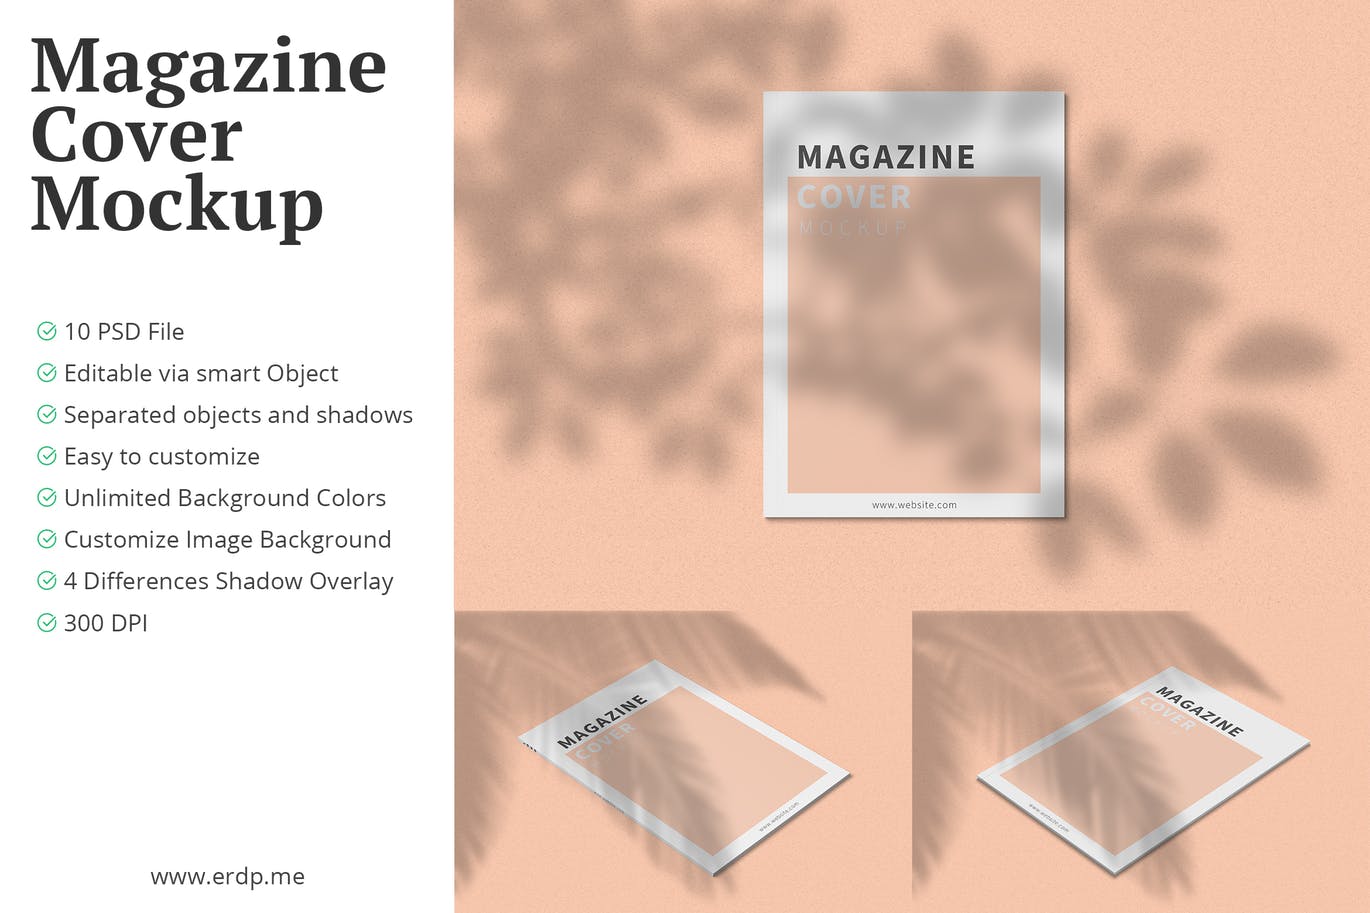 十款多角度预览A4杂志封面样机 A4 Magazine Cover Mockup 10 PSD Files设计素材模板